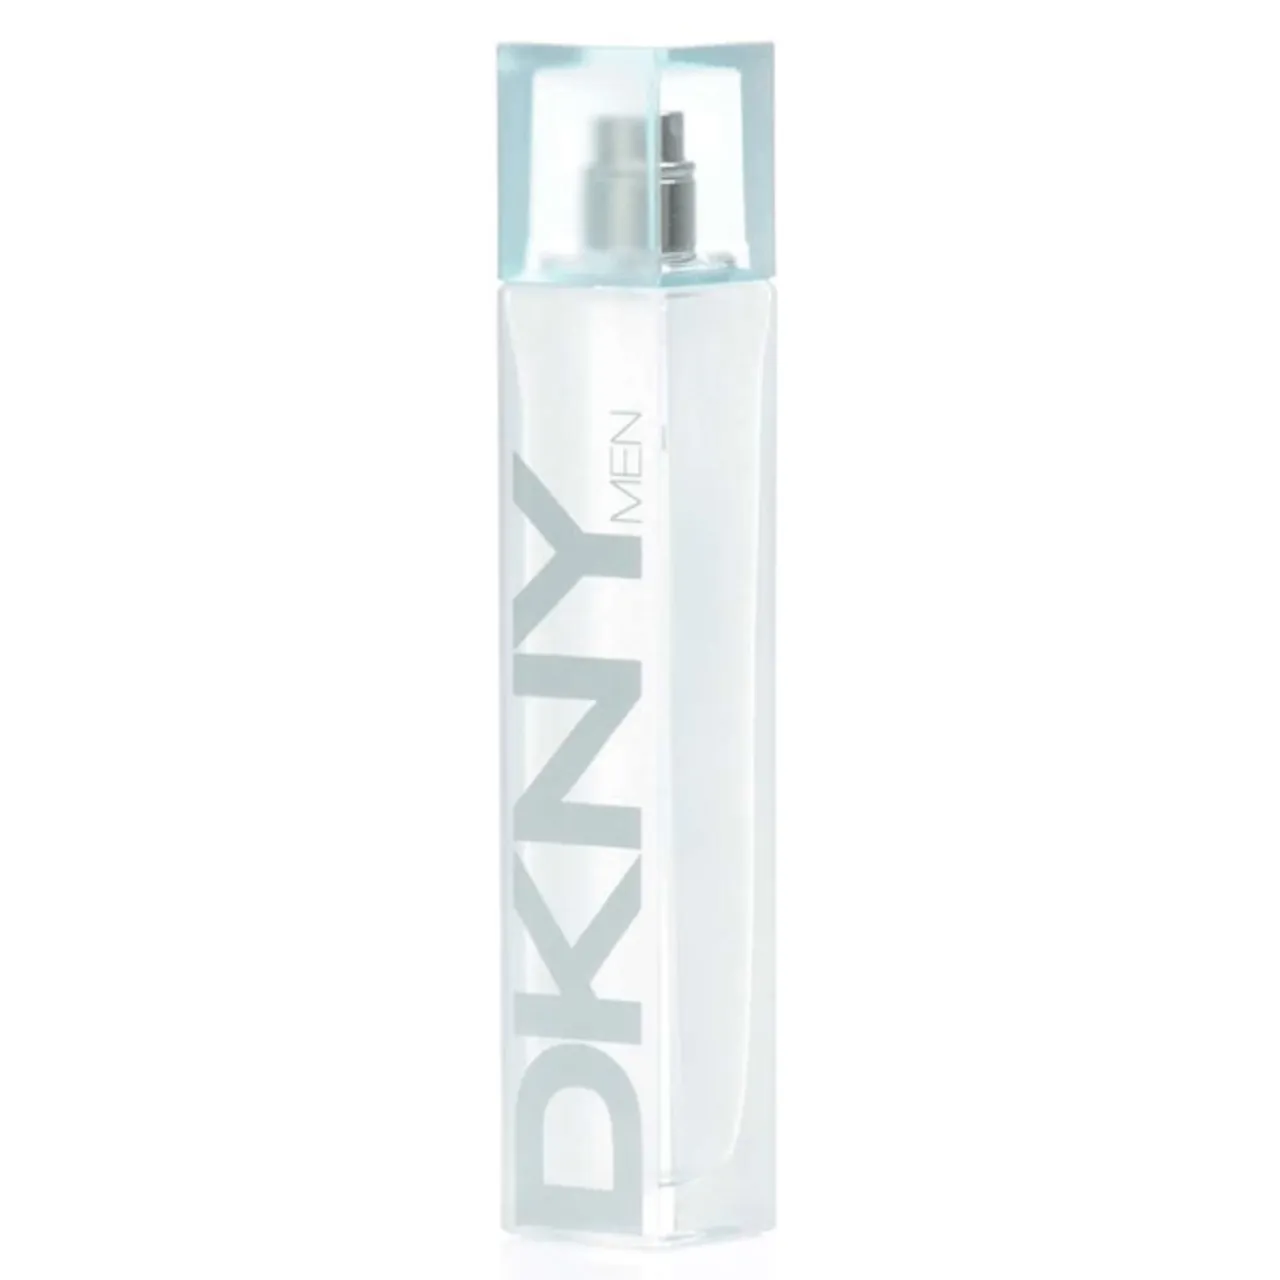 DKNY Men eau de toilette spray 100 ml